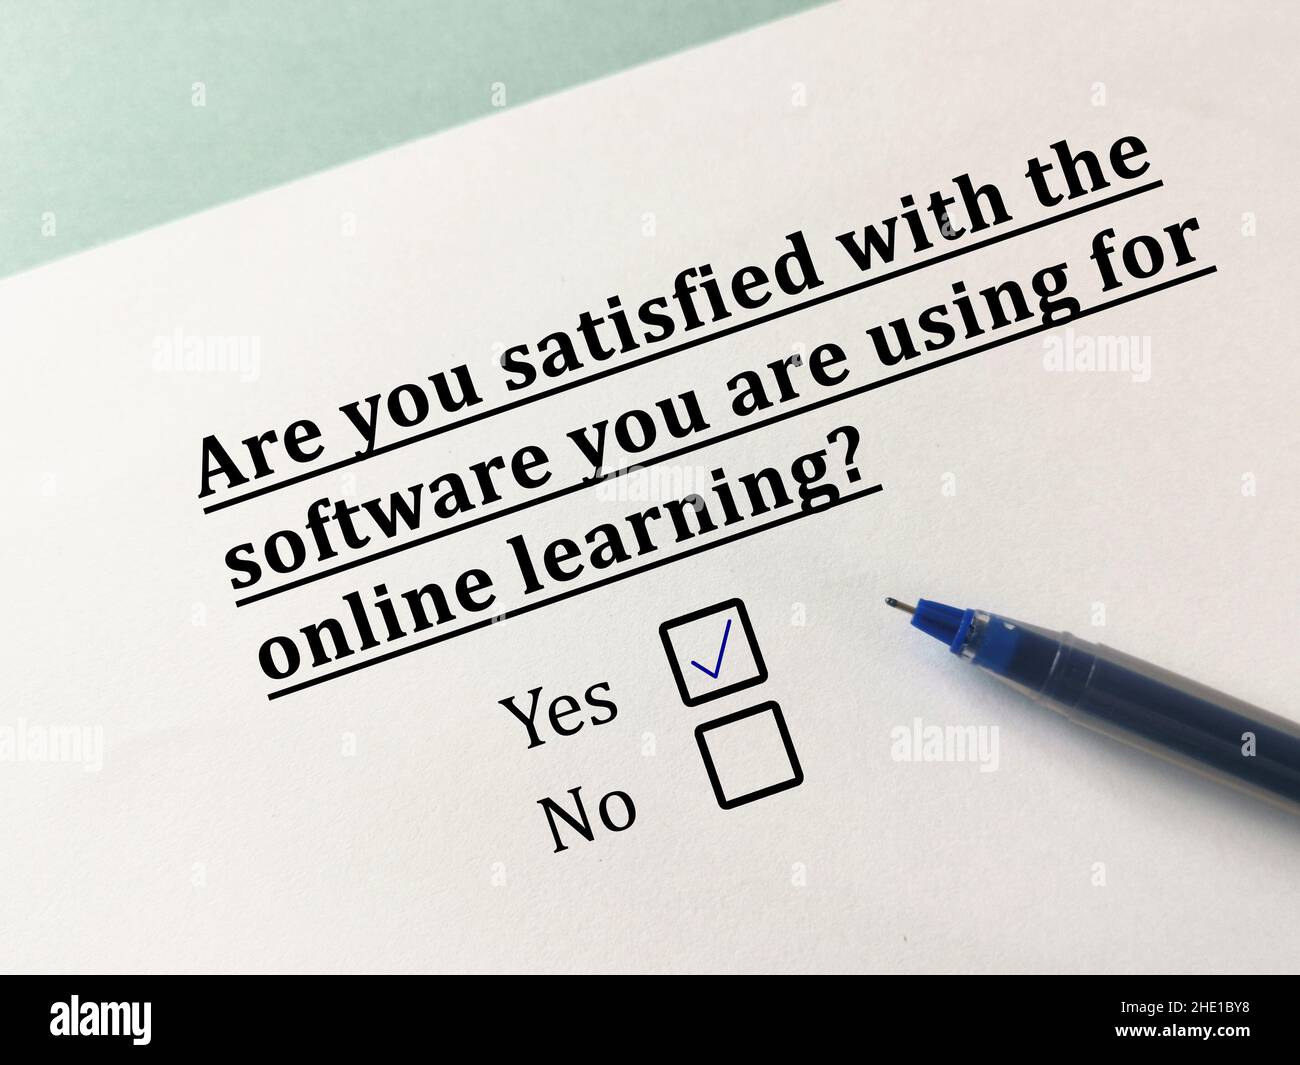 Une personne répond à une question sur l'apprentissage en ligne.La personne est satisfaite du logiciel qu'il utilise pour l'apprentissage en ligne. Banque D'Images